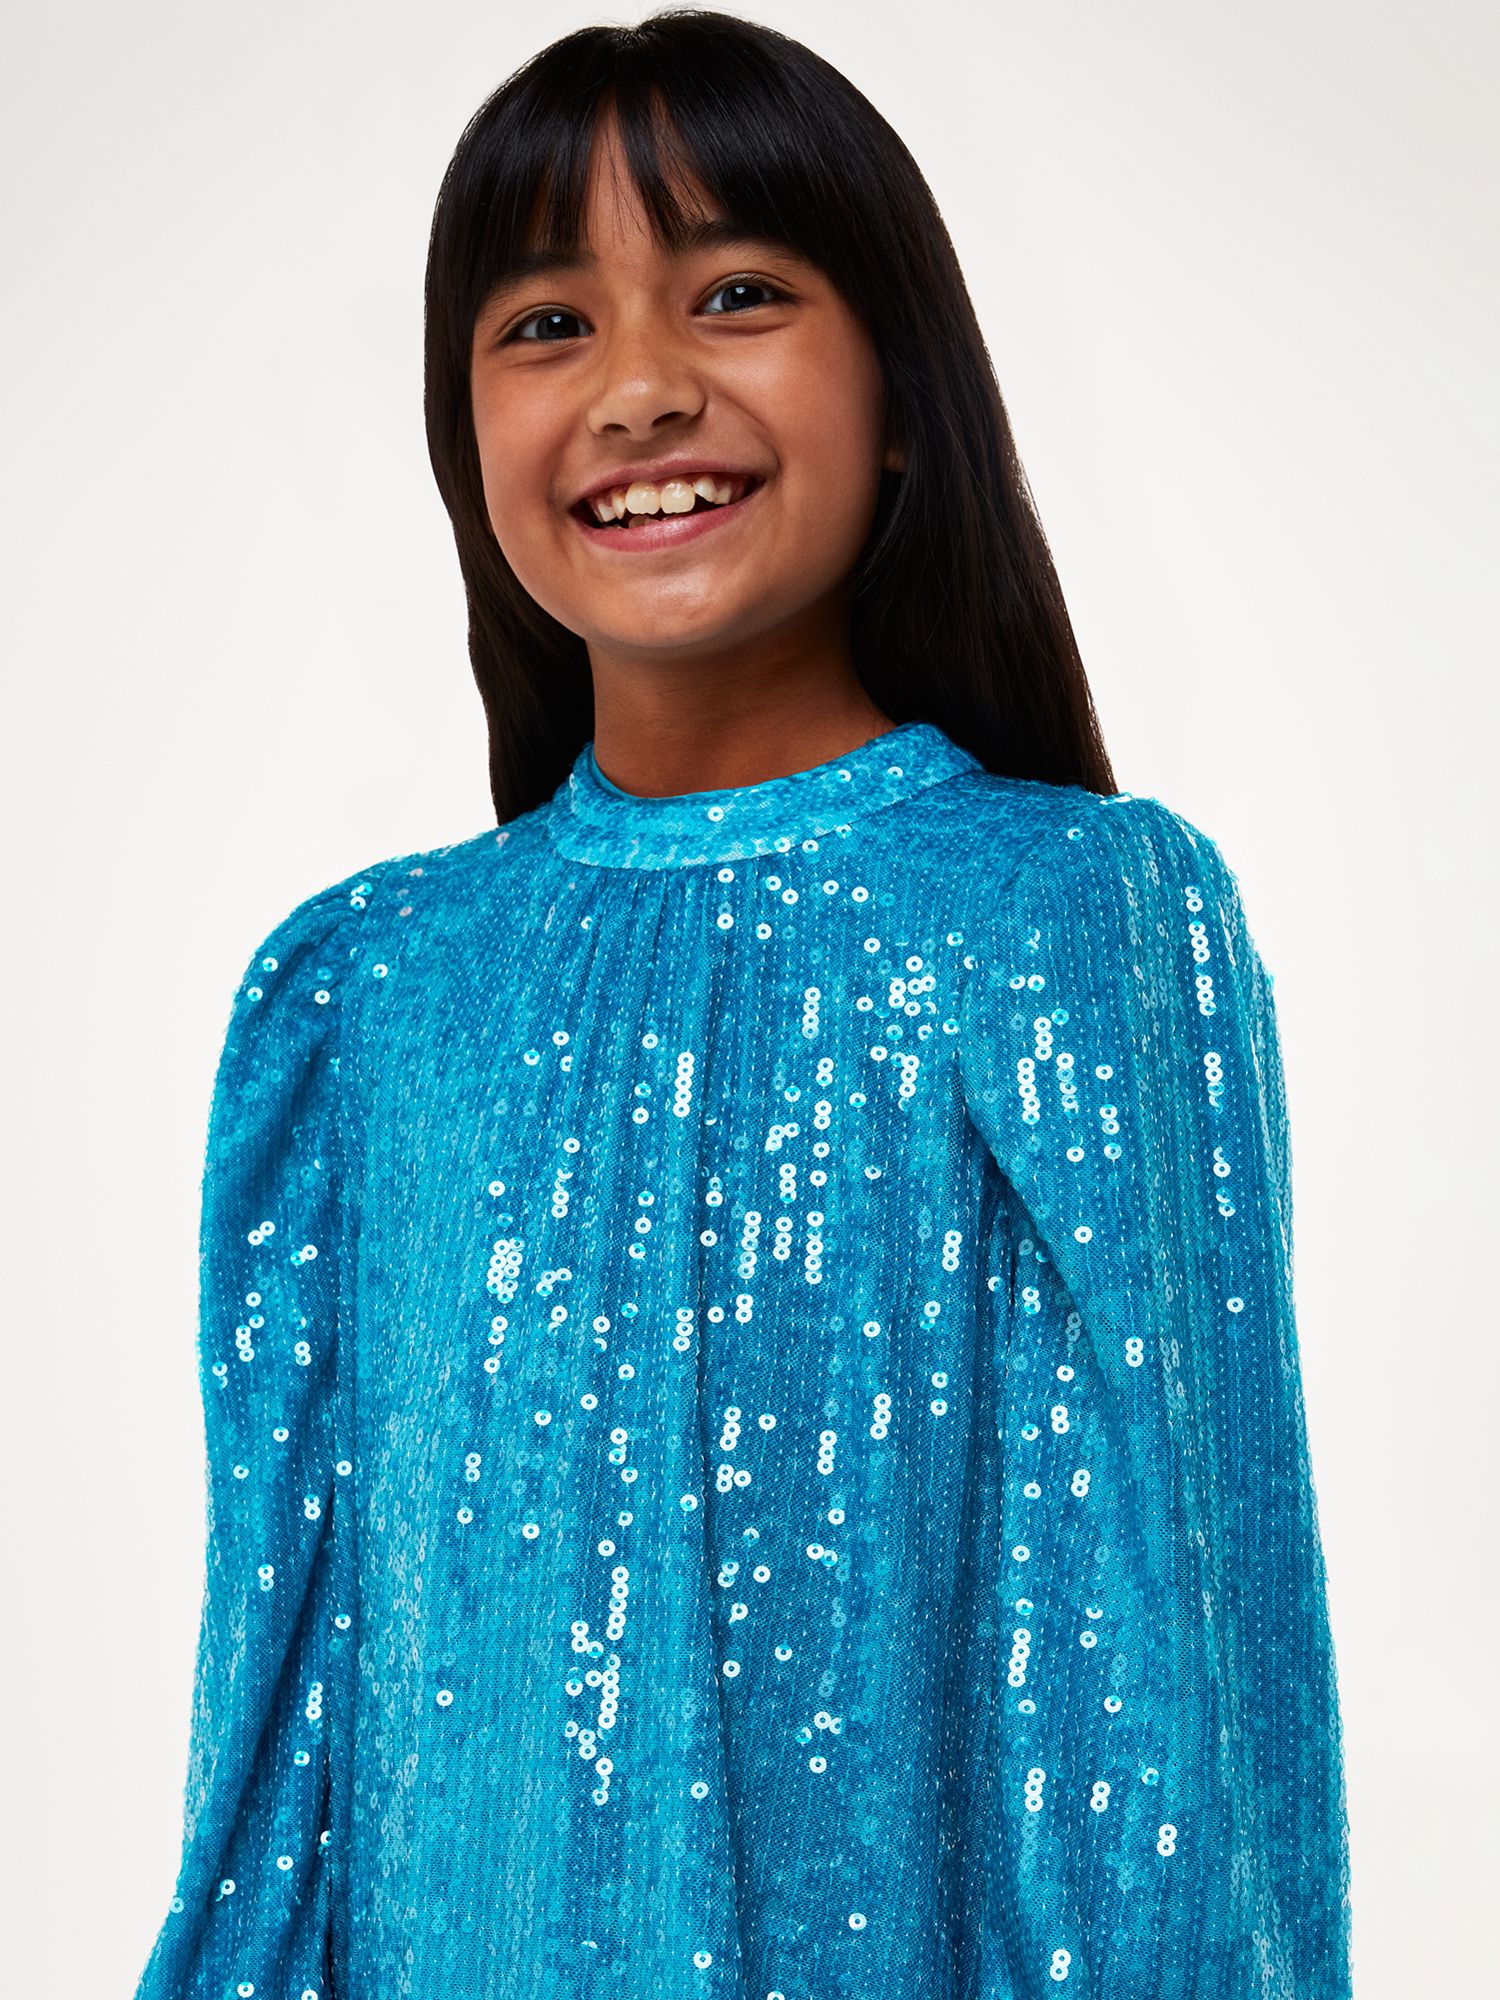 Whistles Kids' Sadie Sequin Swing Dress, Blue, 6-7 years